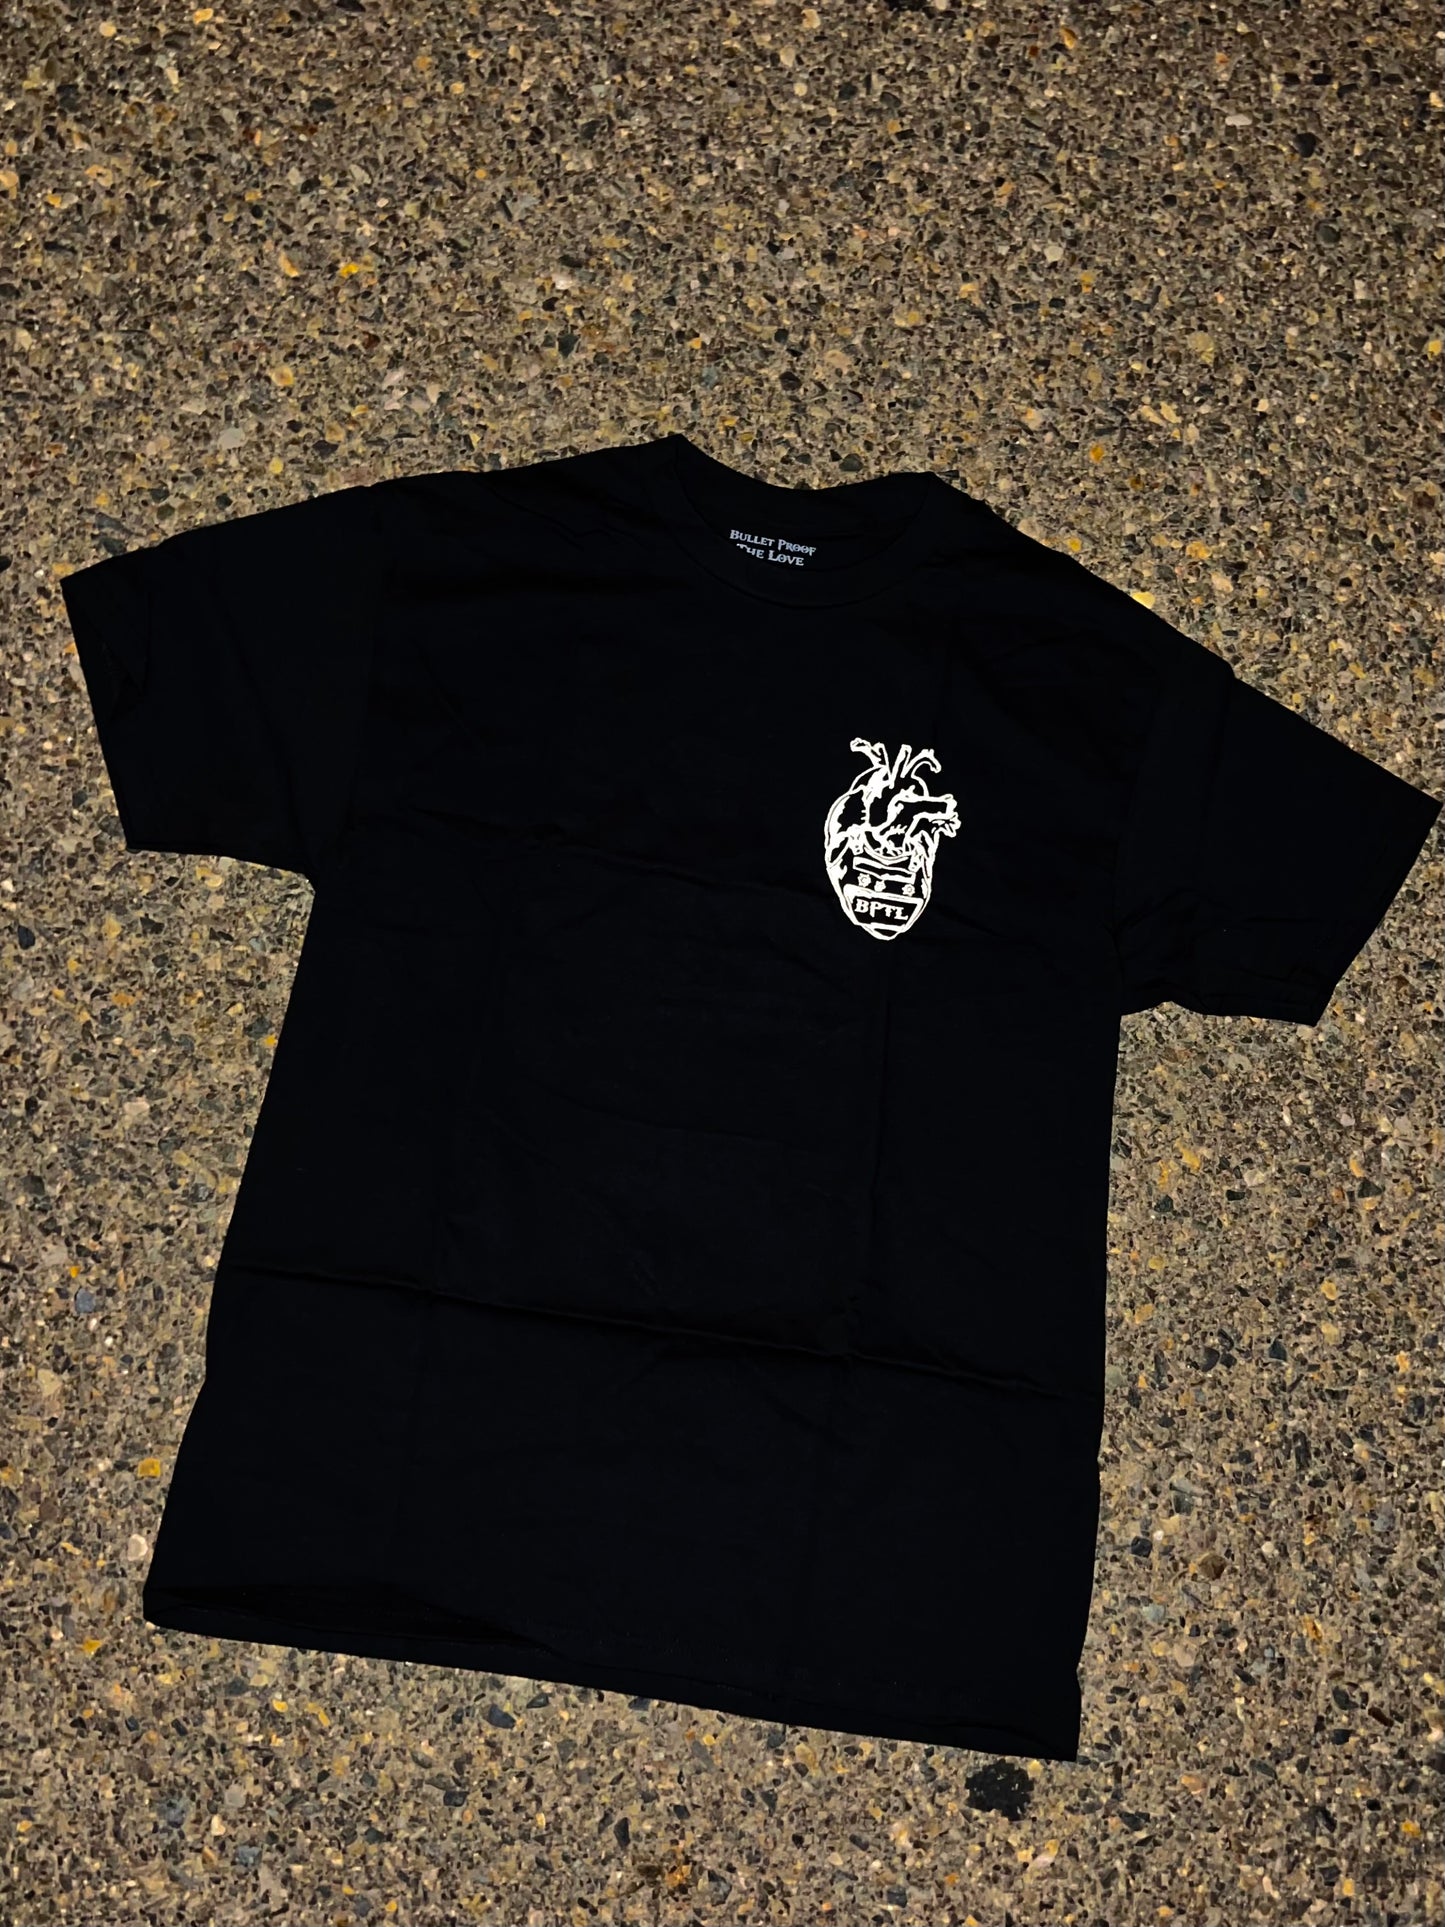 BPTL black T-shirt